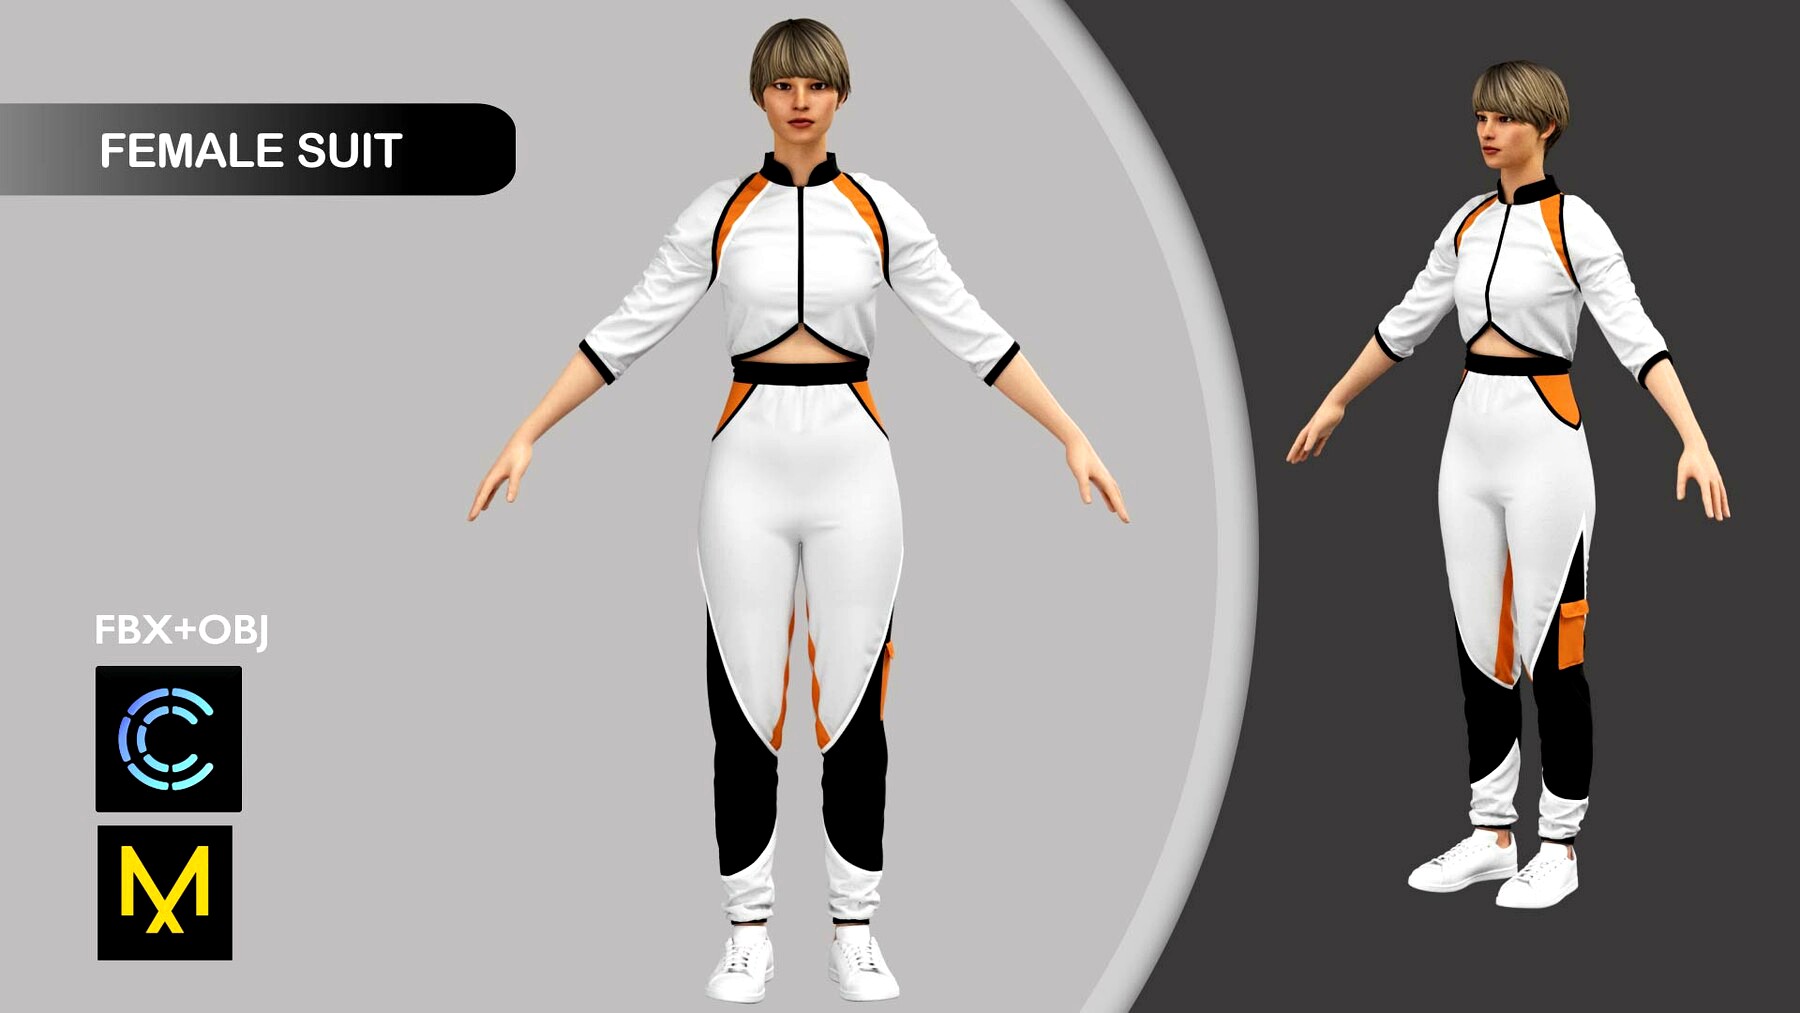 Female Sport Suit Marvelous Designer/Clo3d project + OBJ + FBX